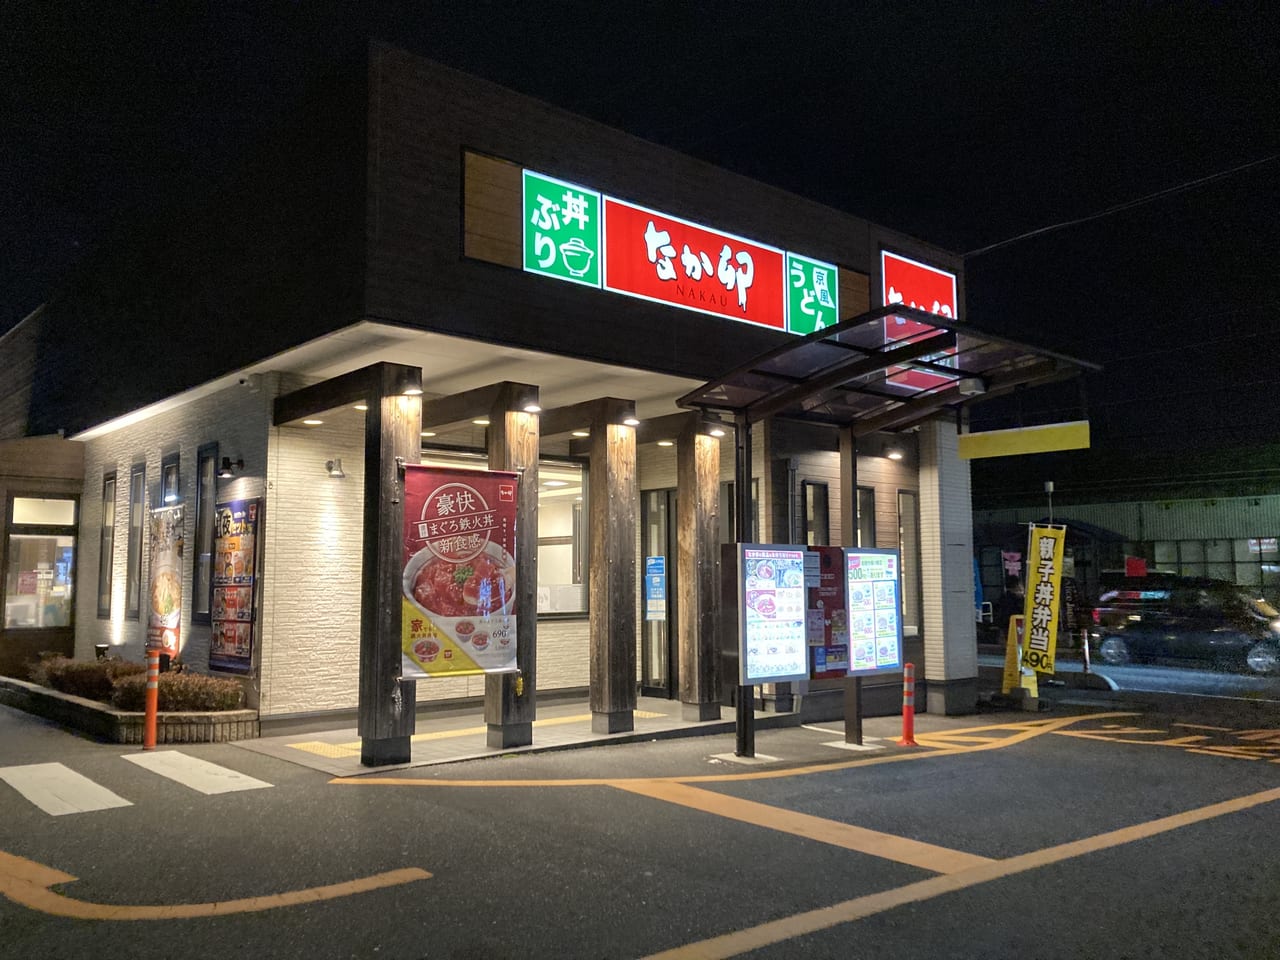 鳥取市 なか卯のランチセットと夜セットの24時間販売はまだ続く 号外net 鳥取市 東部地域